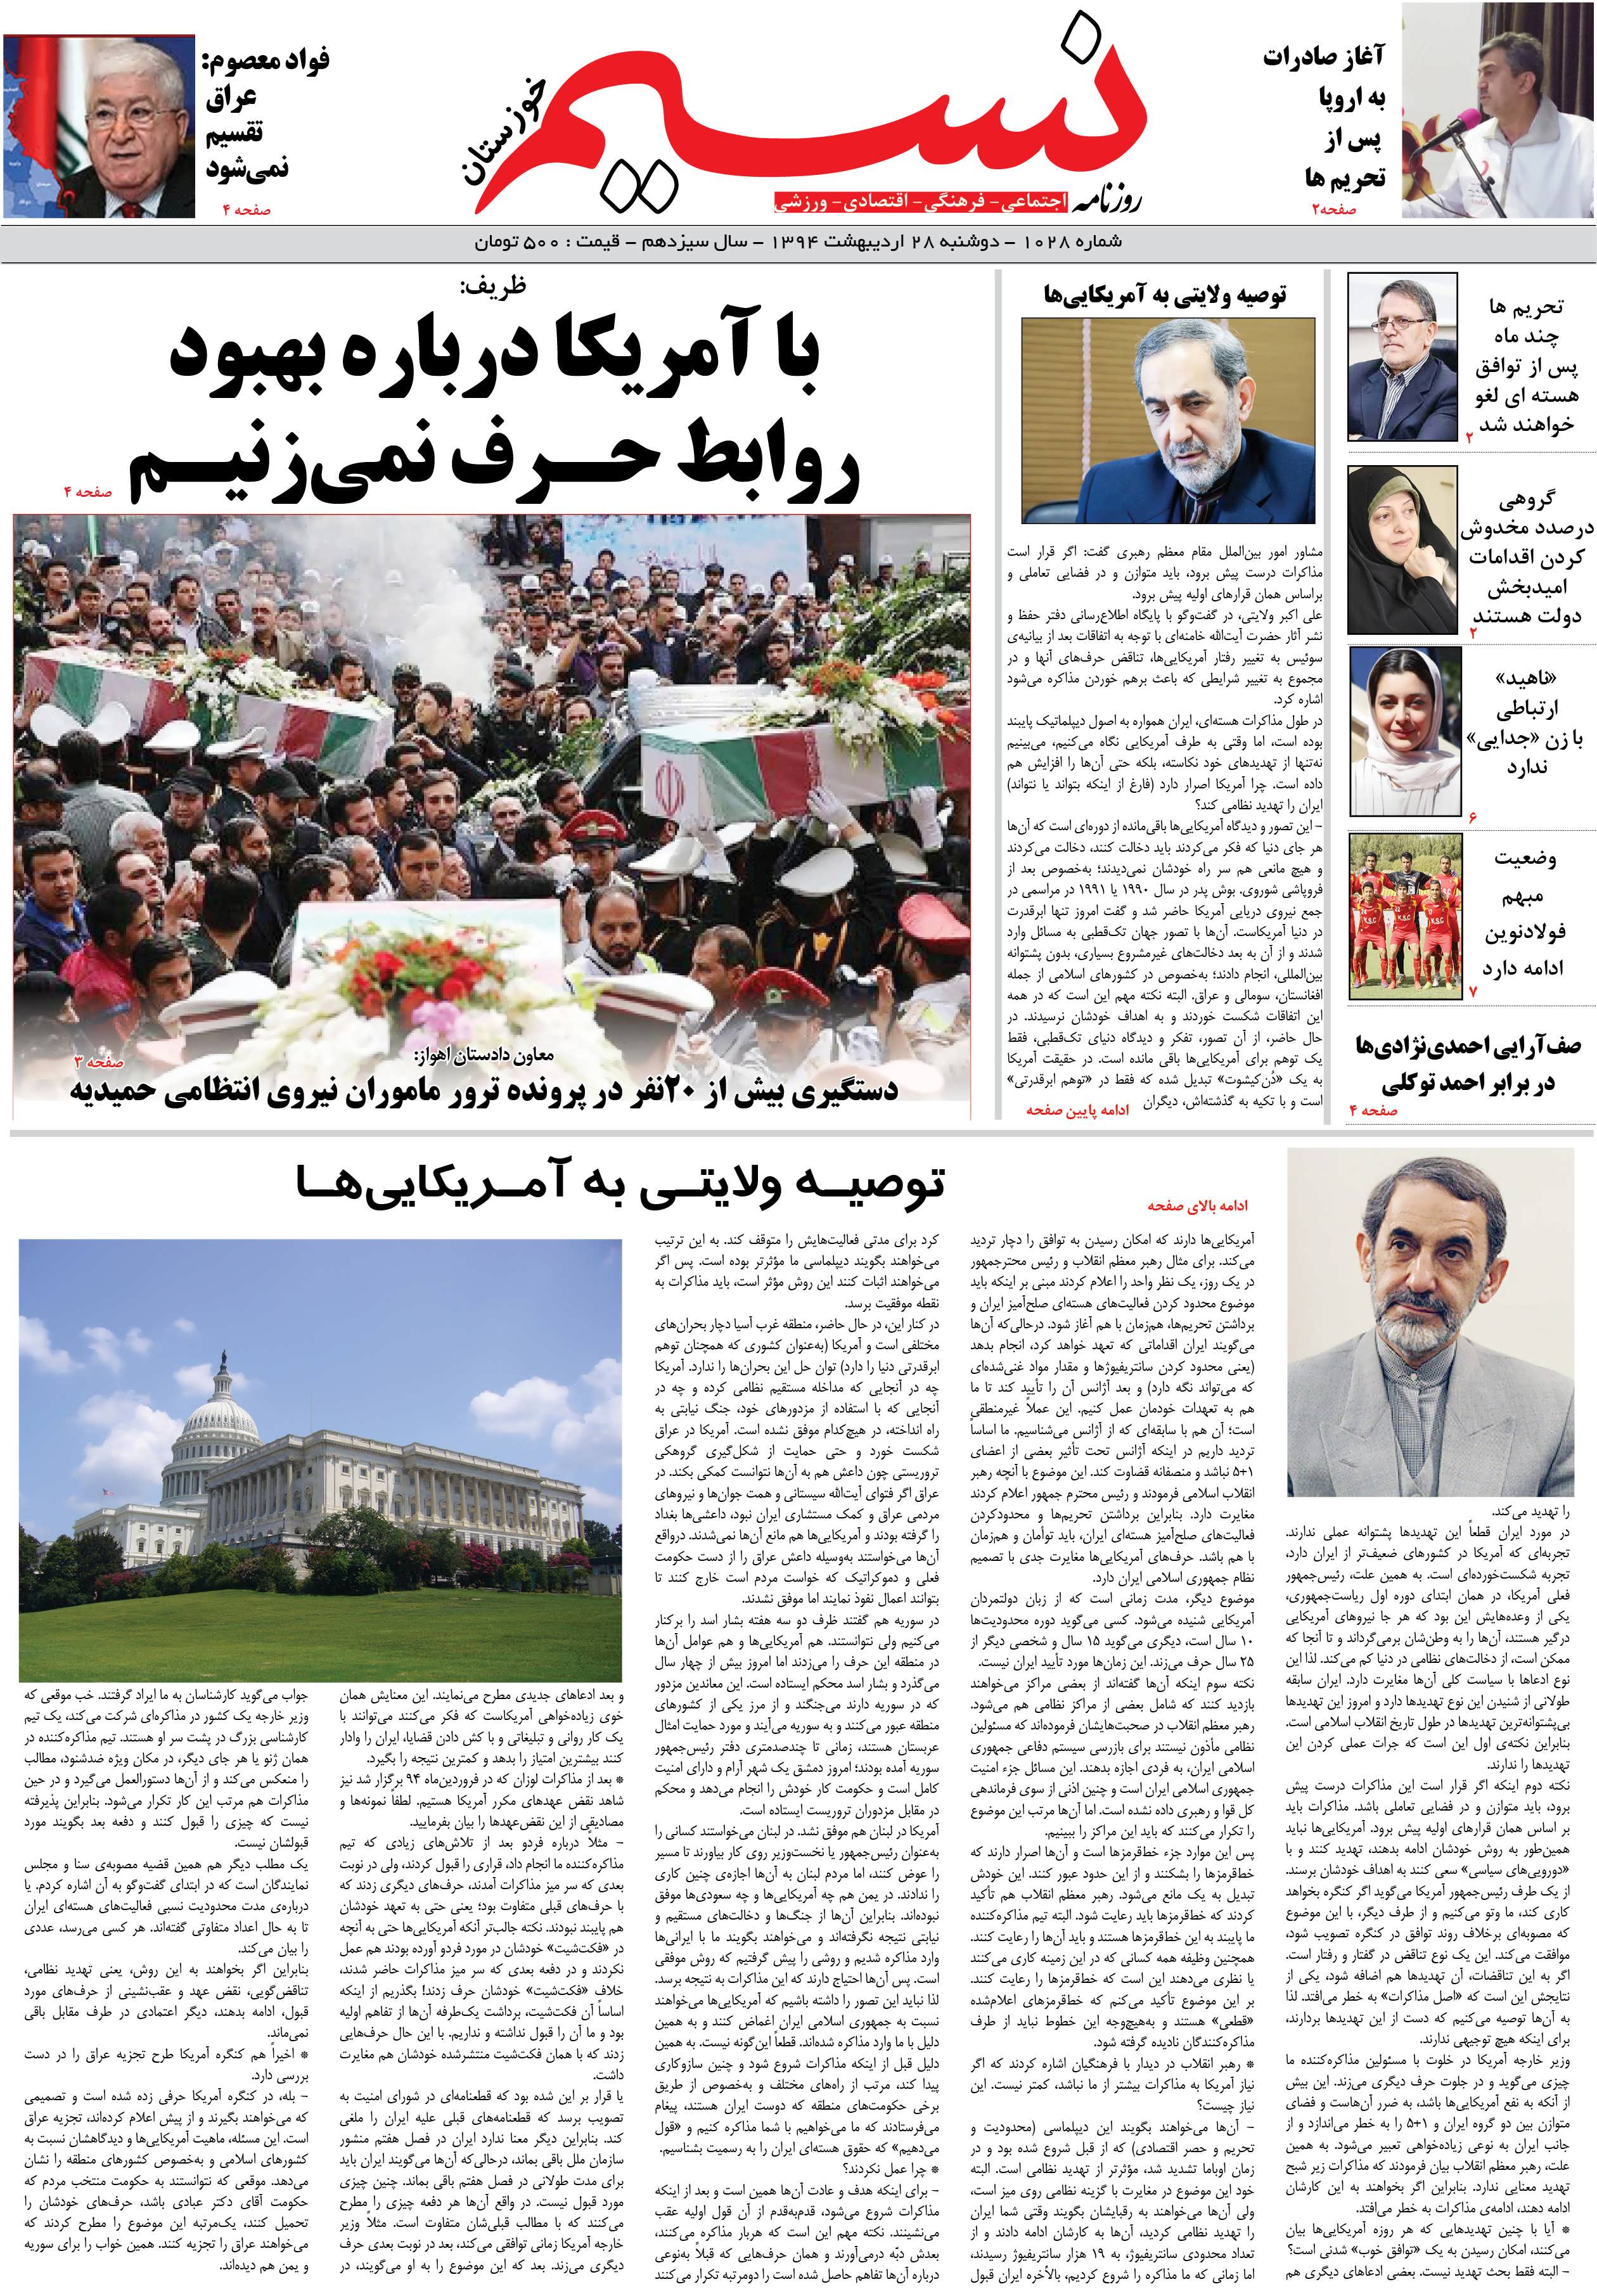 صفحه اصلی روزنامه نسیم شماره 1028